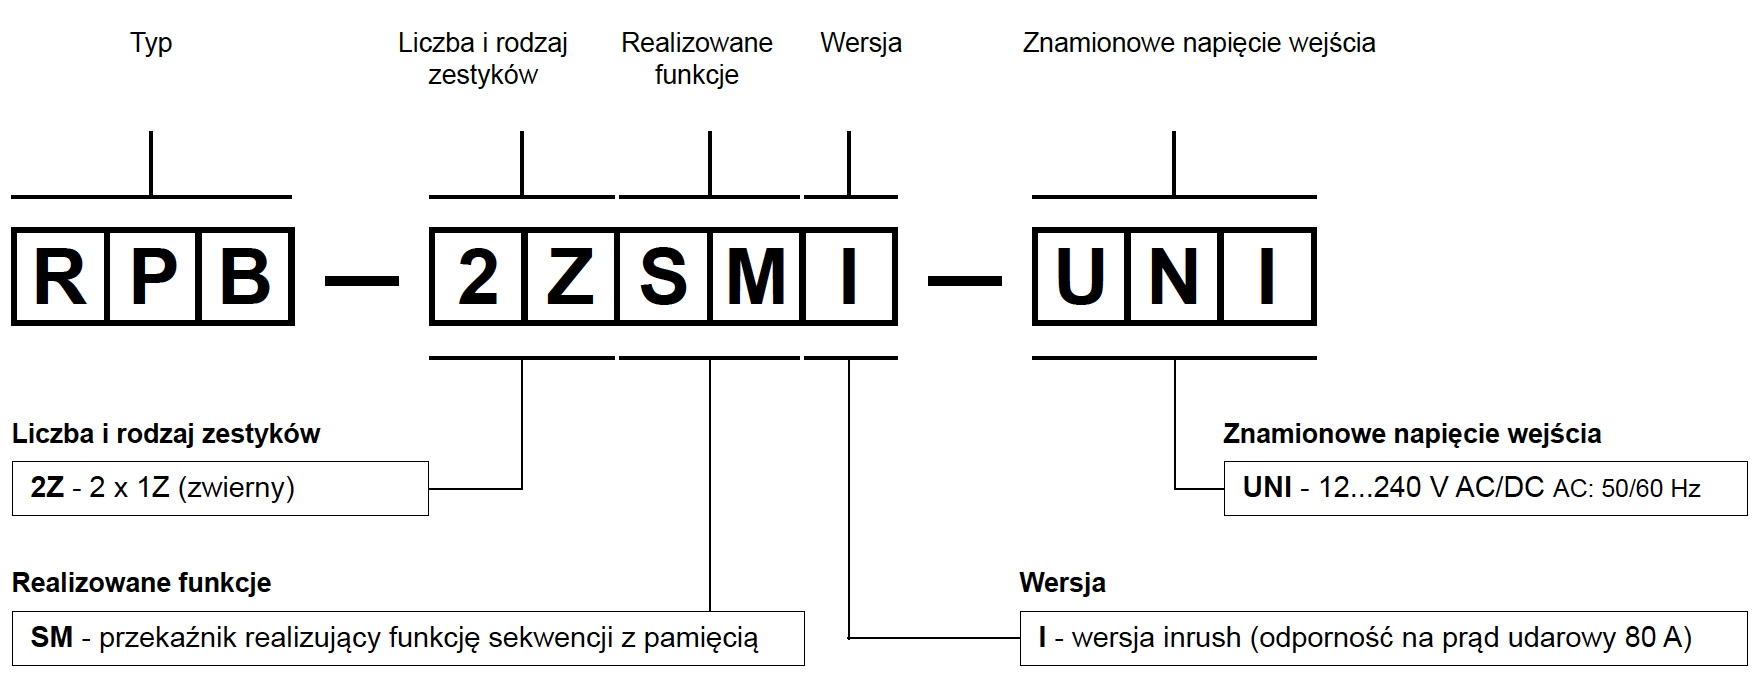 Oznaczenia kodowe do zamówień  Przykład kodowania:  RPB-2ZSMI-UNI